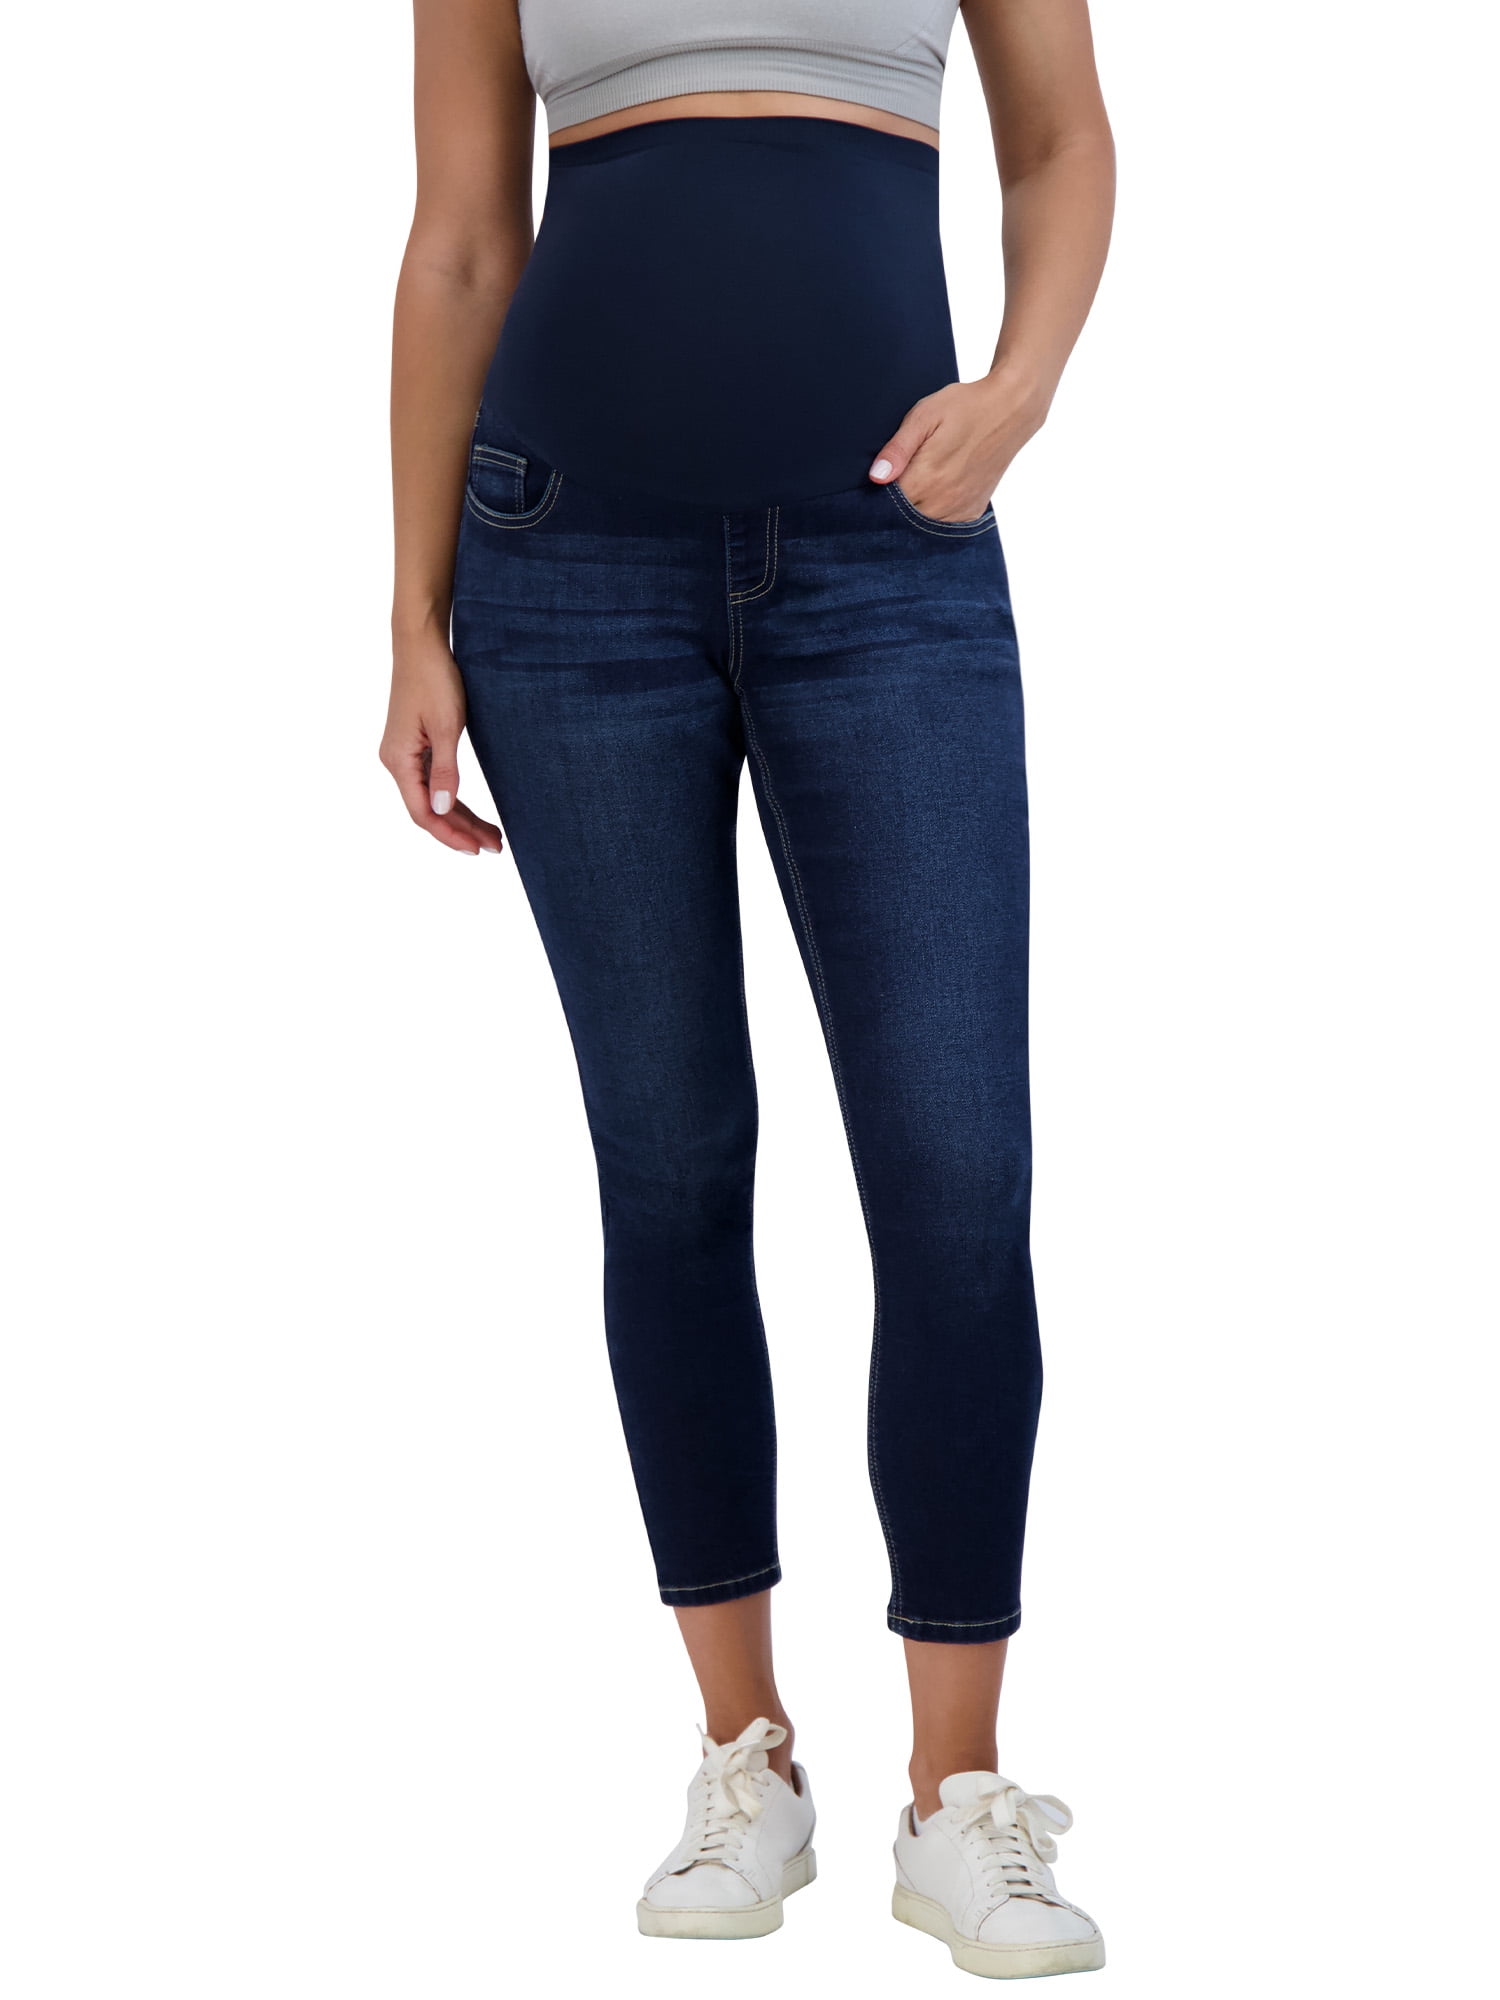 Buy Tall Sara Long Skinny Maternity Pant in Canada at SevenWomen